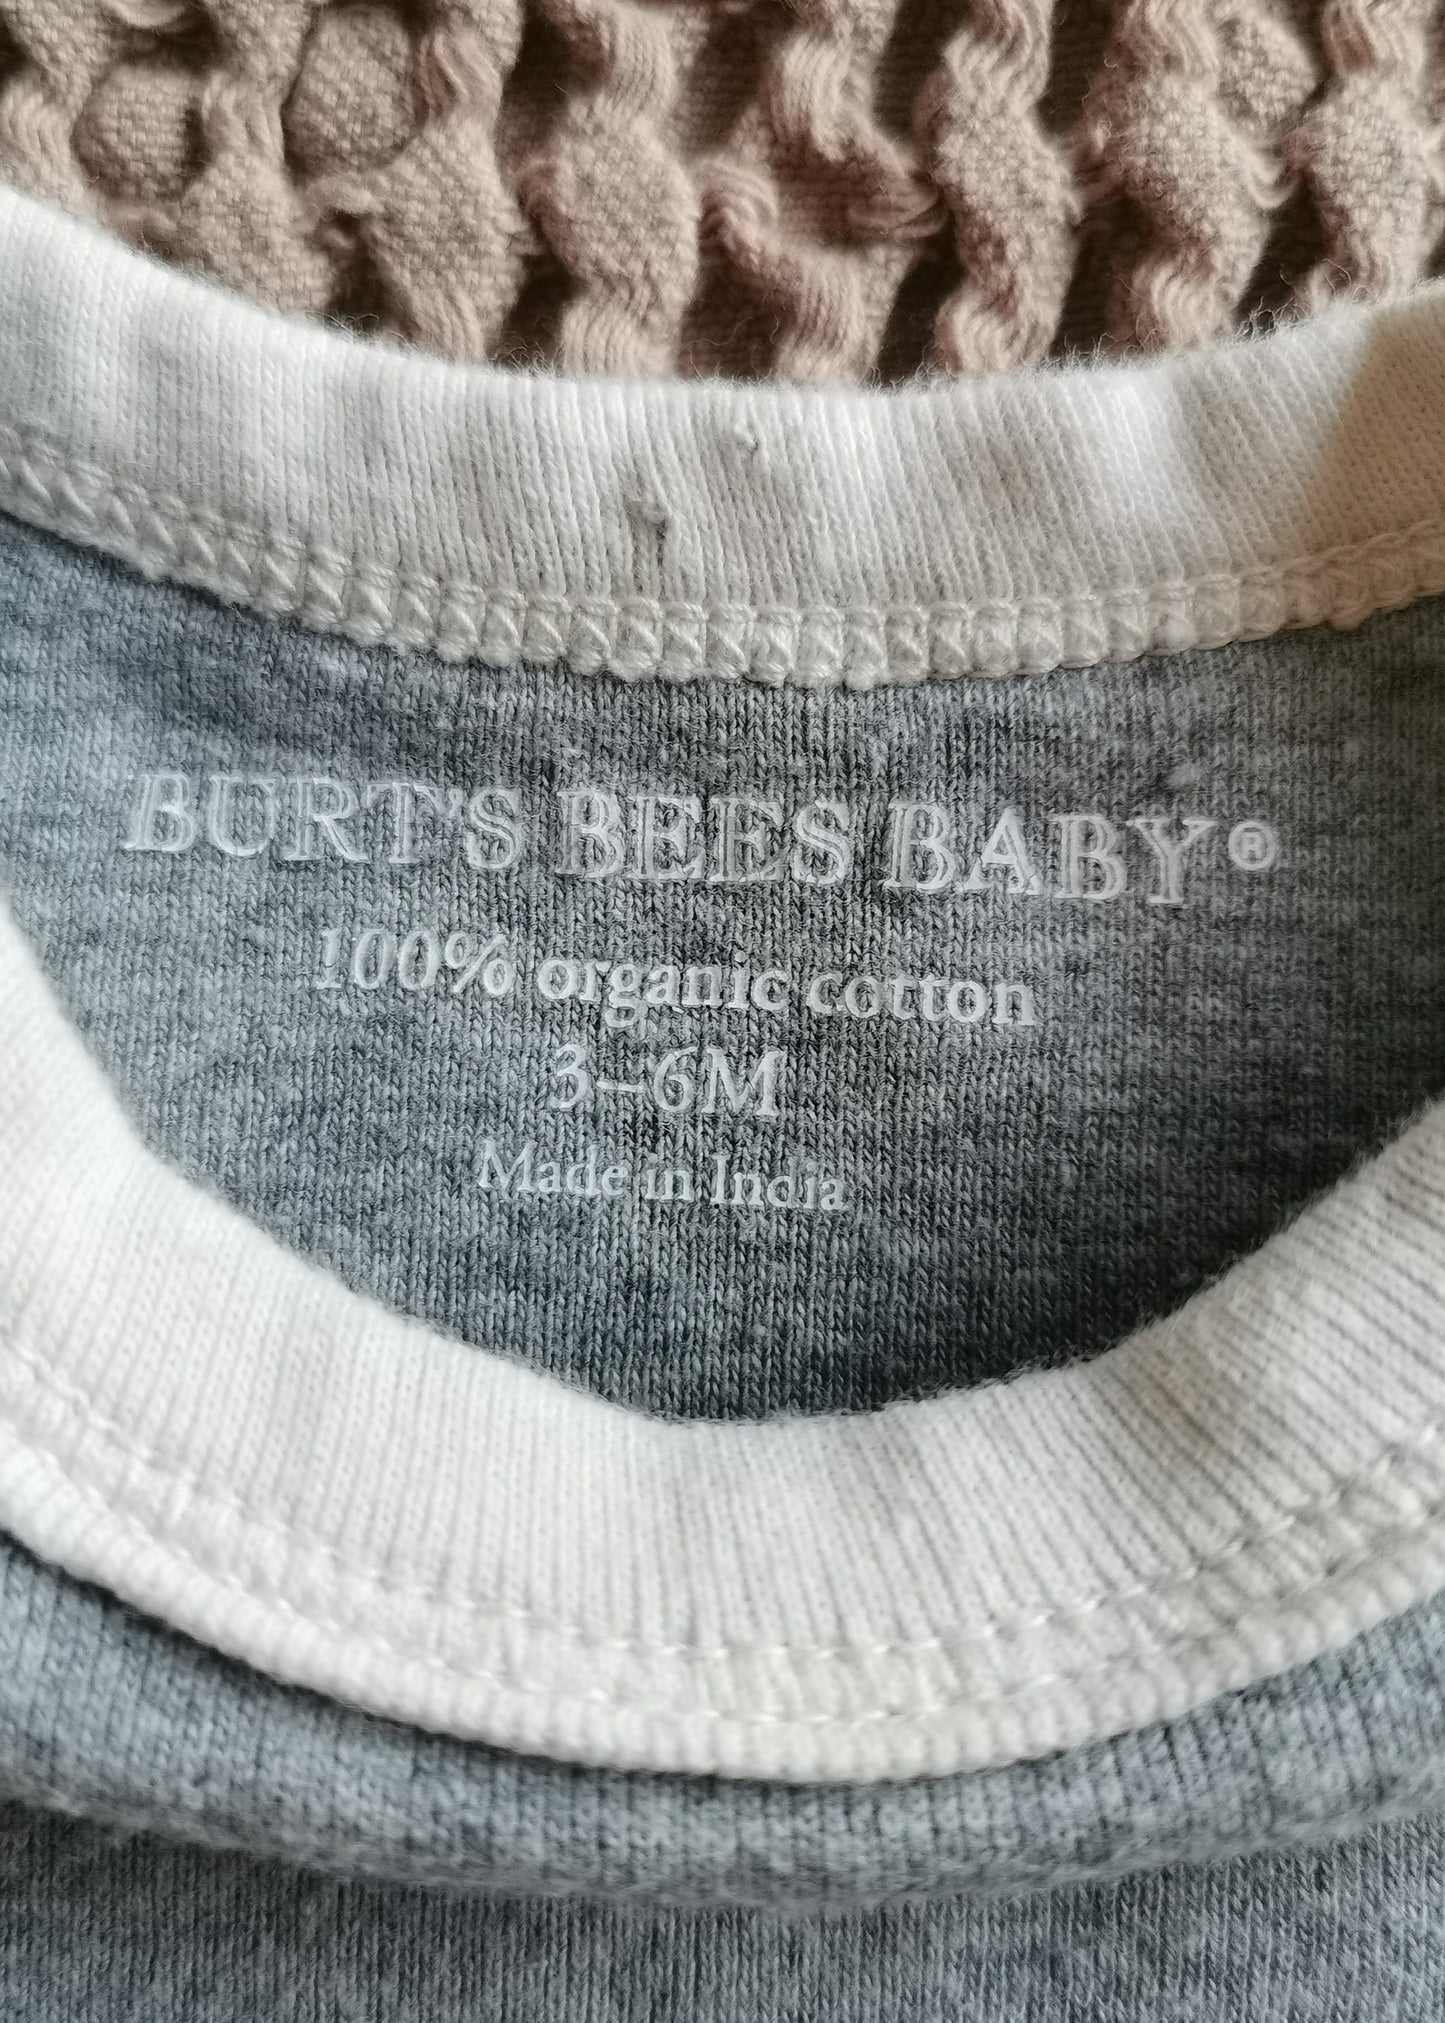 Burt's Bees Organic Cotton Romper (3-6m)